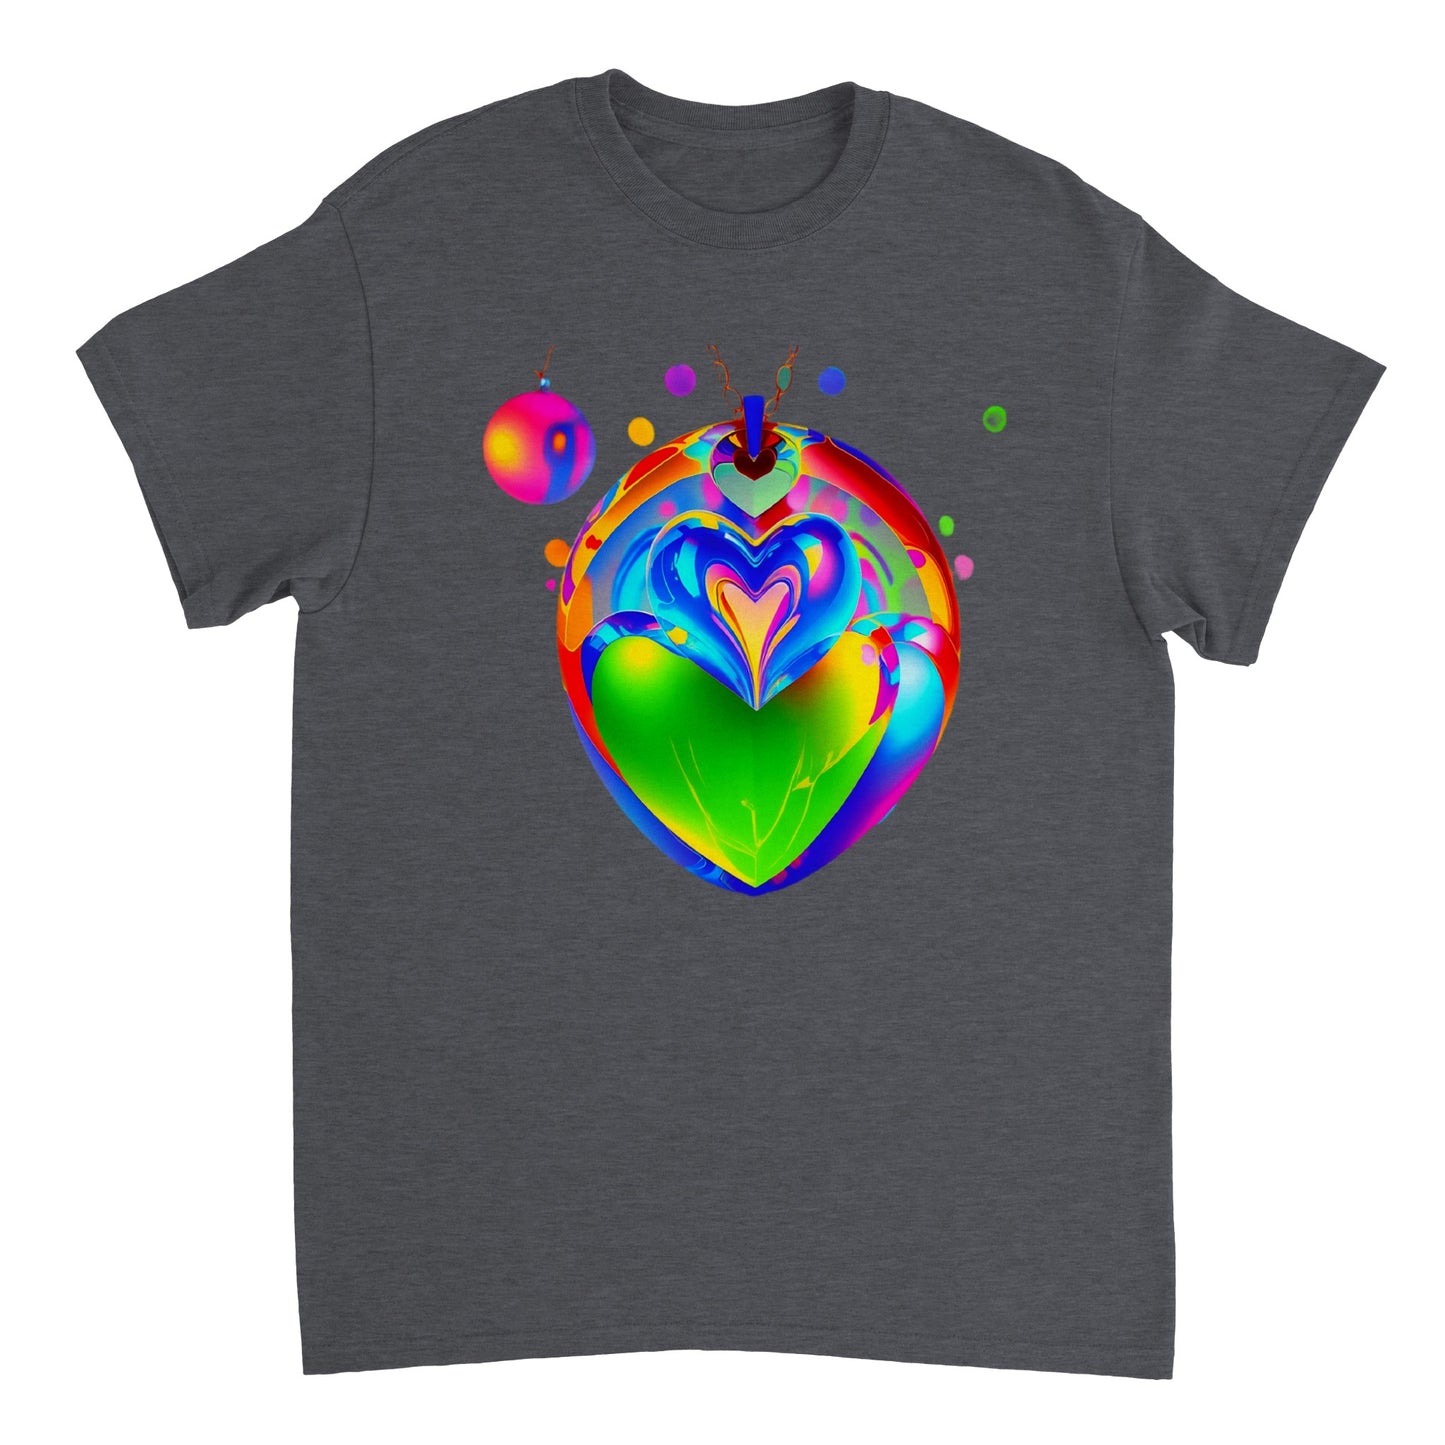 Love Heart - Heavyweight Unisex Crewneck T-shirt 50